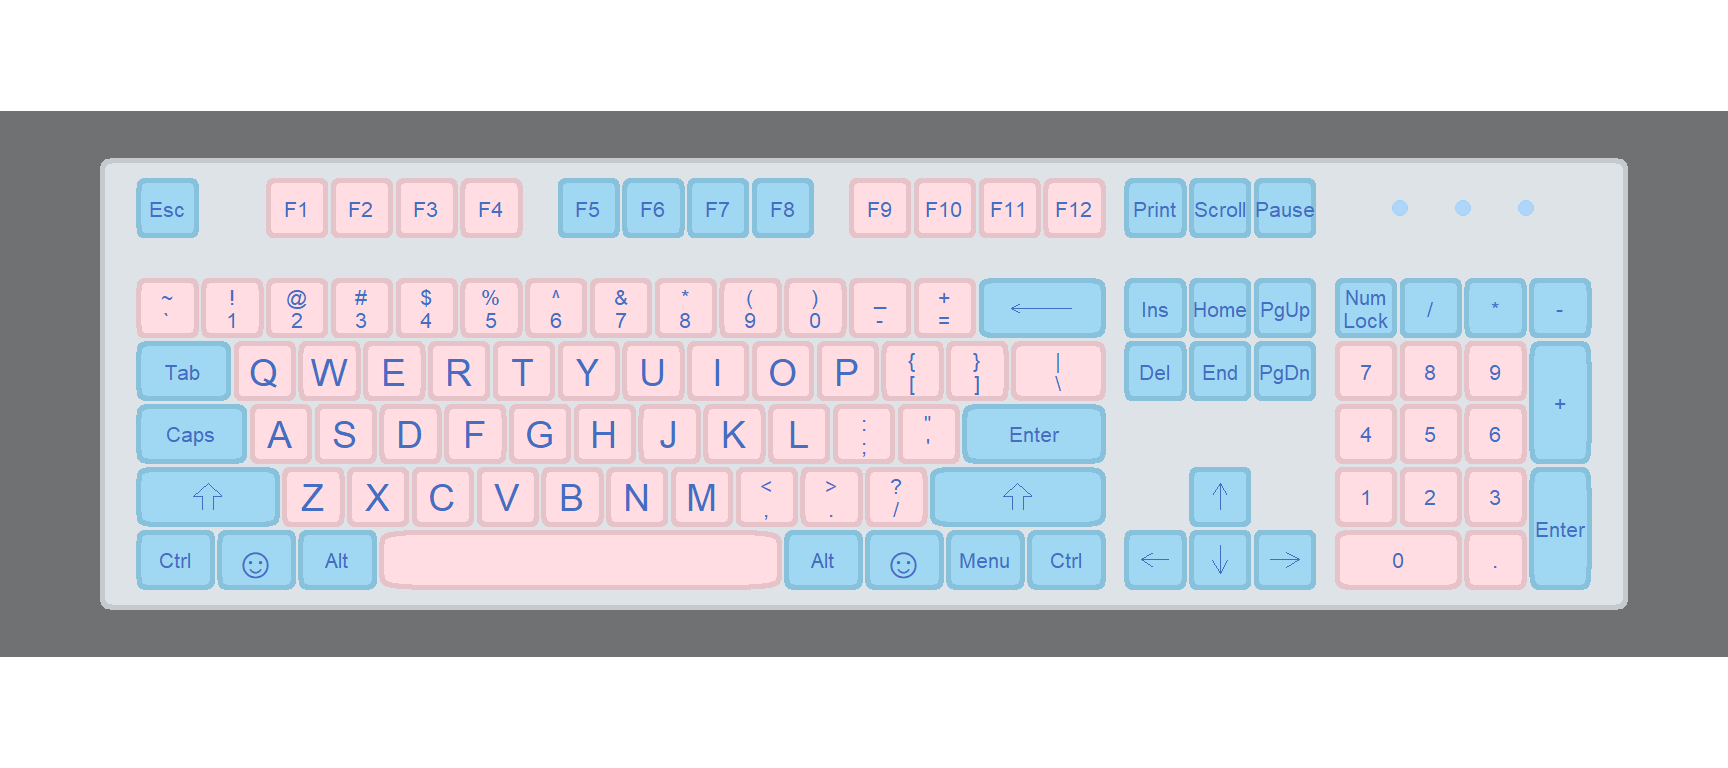 Full keyboard in ggplot2